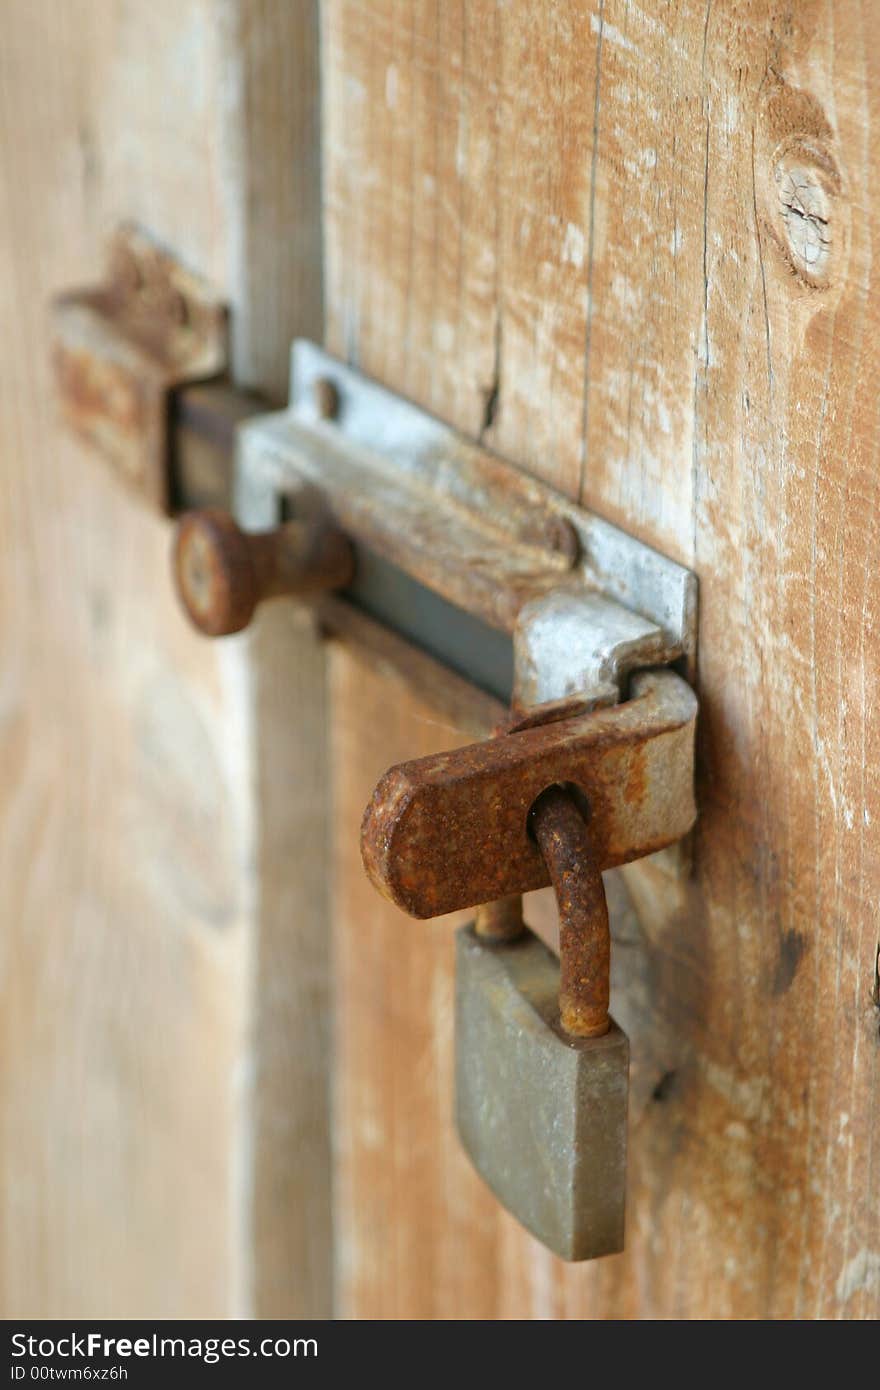 Rusty lock on the wooden door. Rusty lock on the wooden door